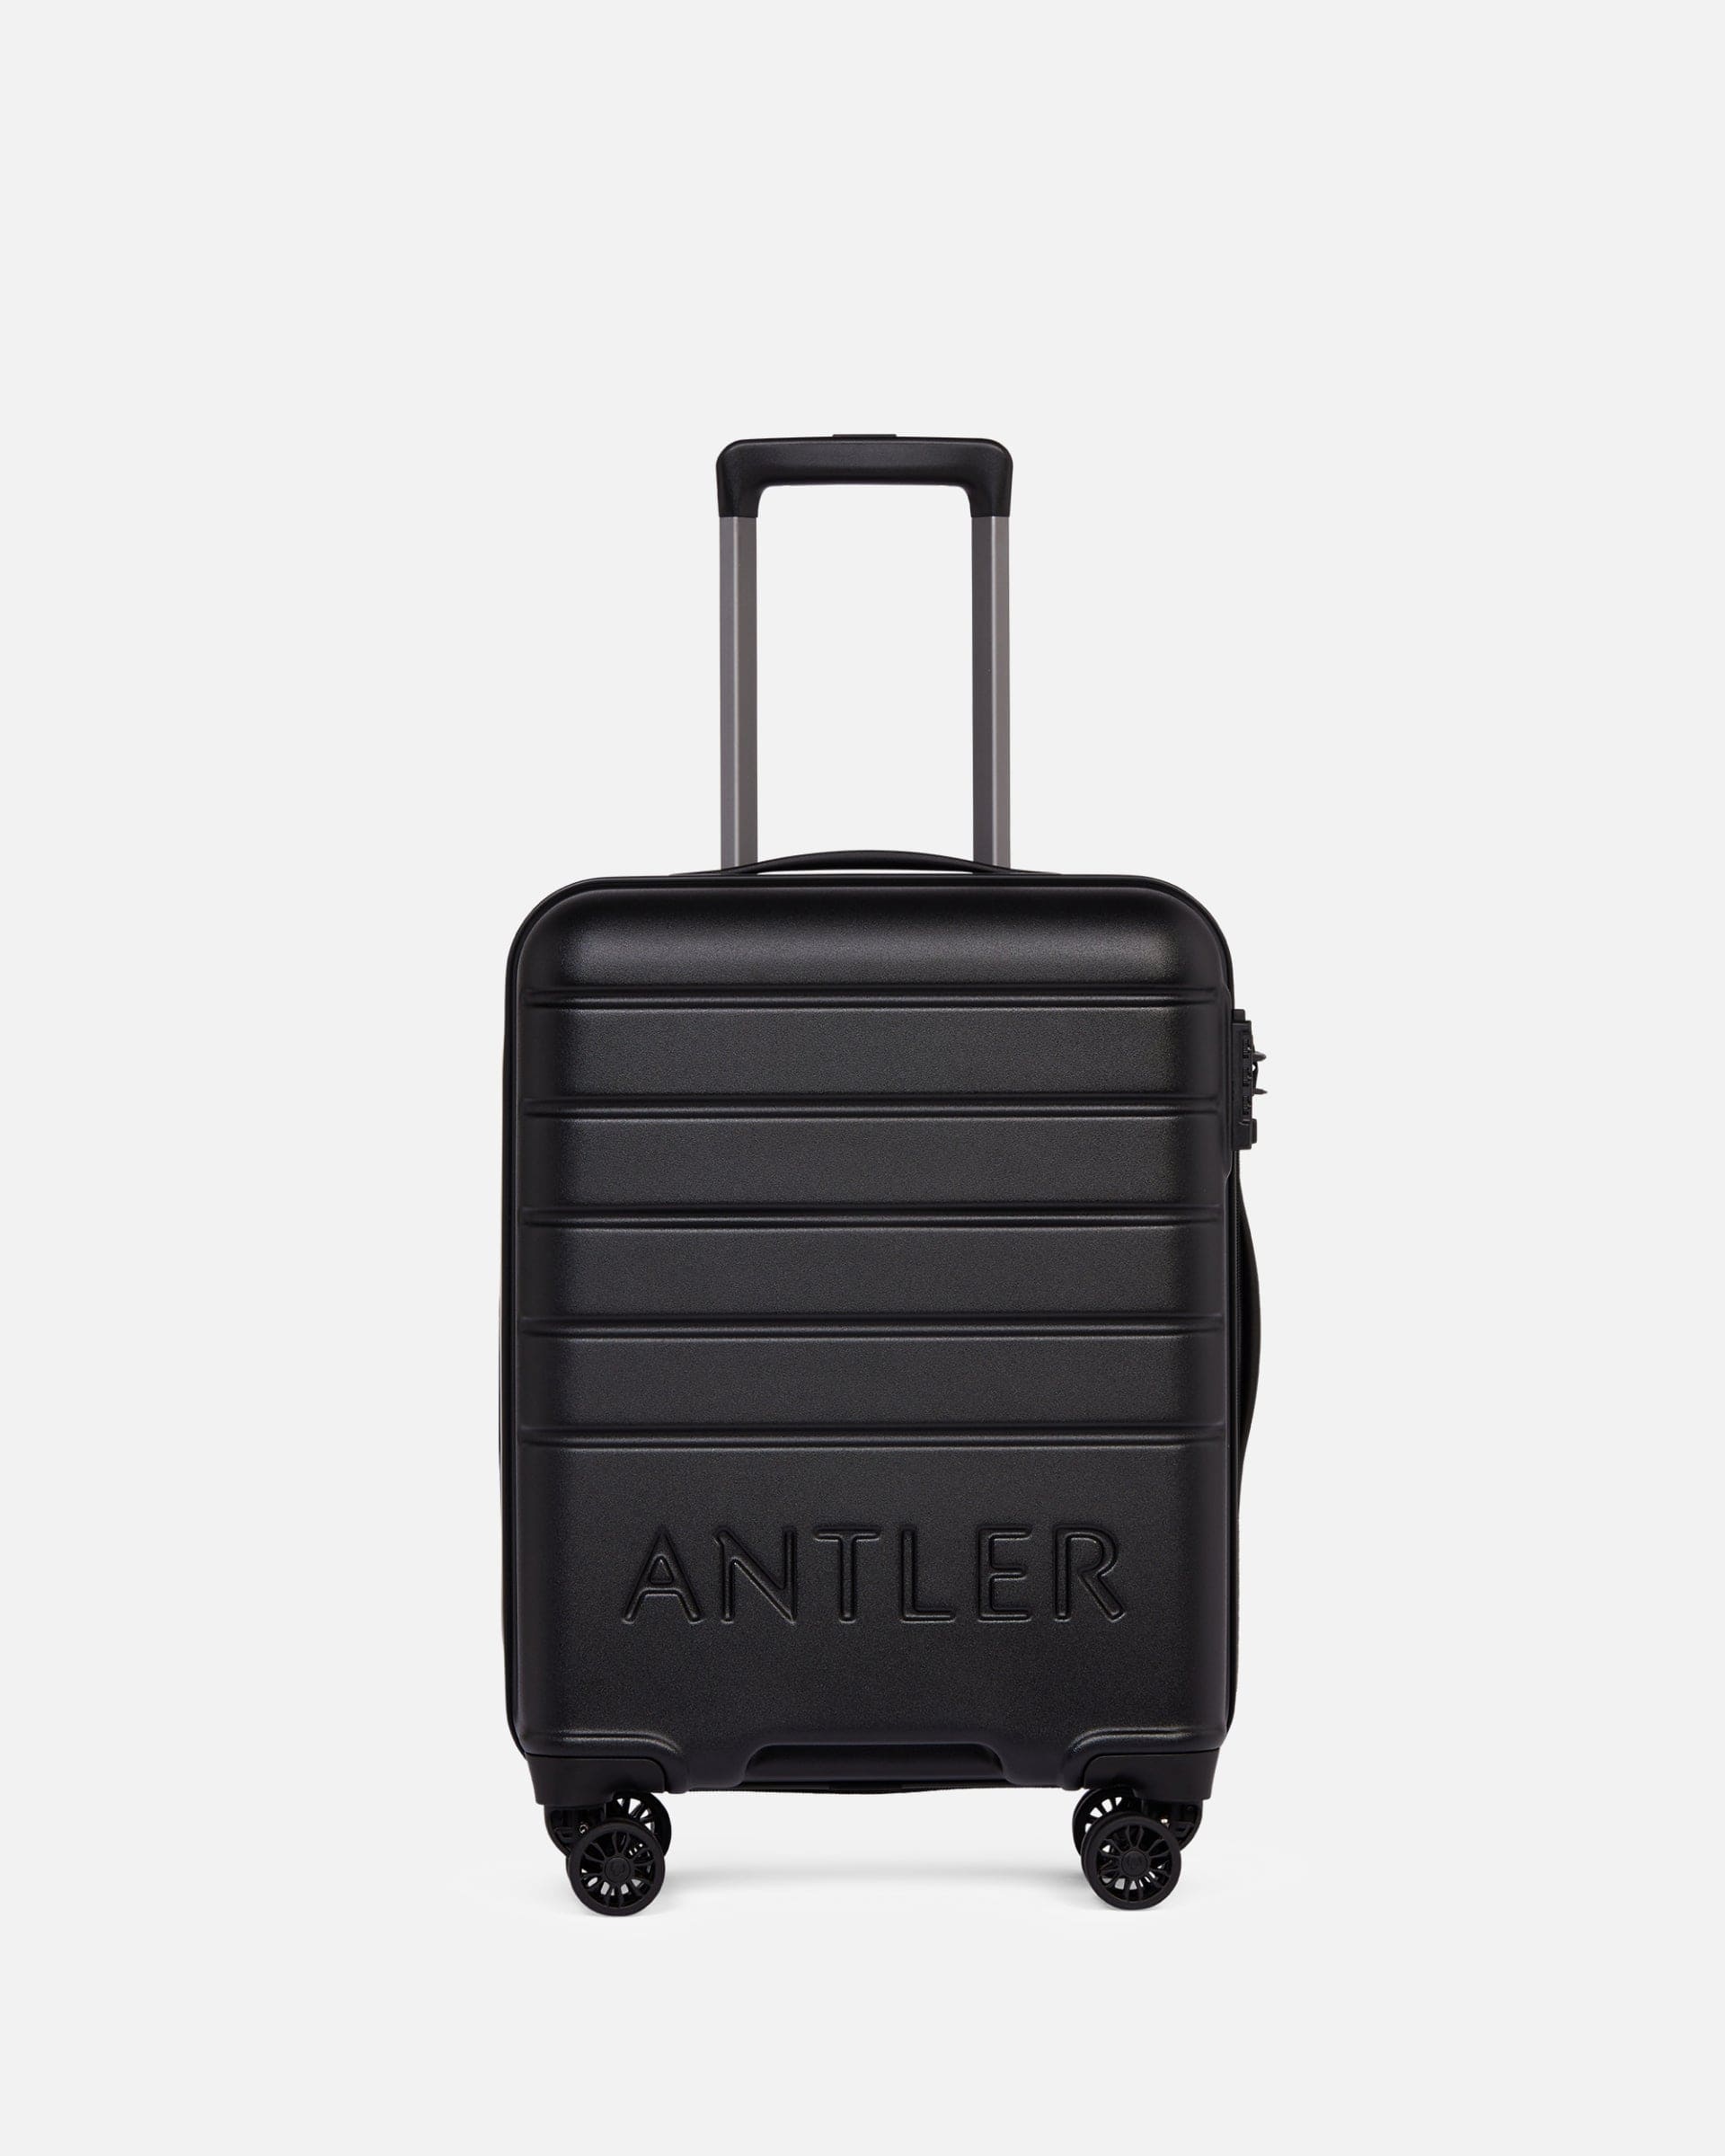 Antler UK Luggage -  Logo set in black - Hard Suitcases Logo Set of 3 Suitcases Black | Lightweight Hard Shell Luggage